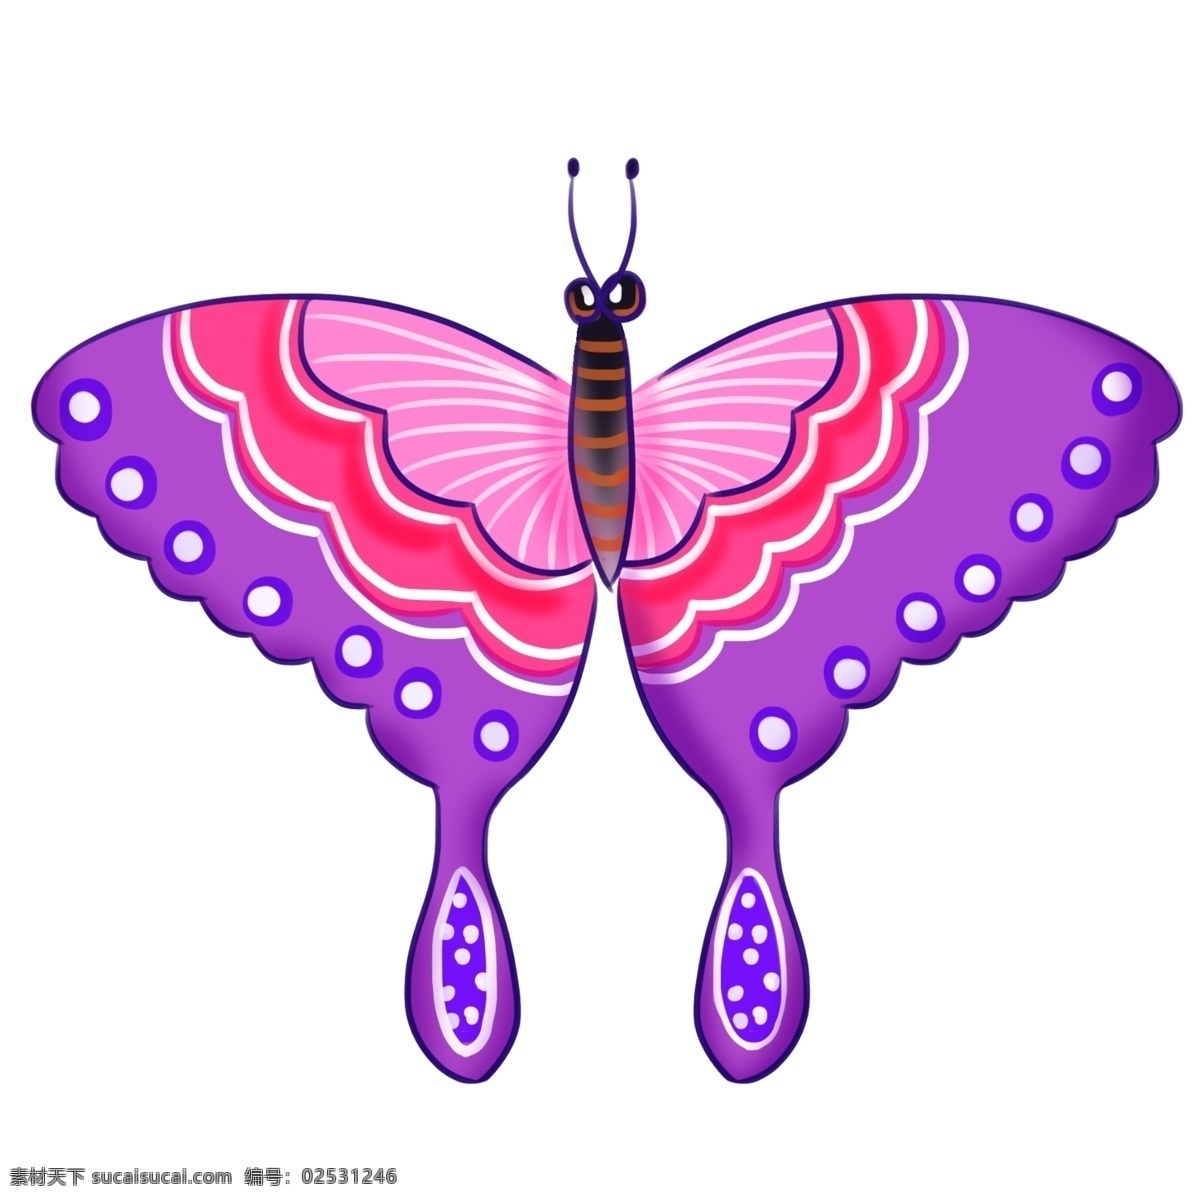 紫色 卡通 蝴蝶 风筝 蝴蝶风筝插画 卡通风筝插画 紫色的蝴蝶 白色的花纹 创意风筝插画